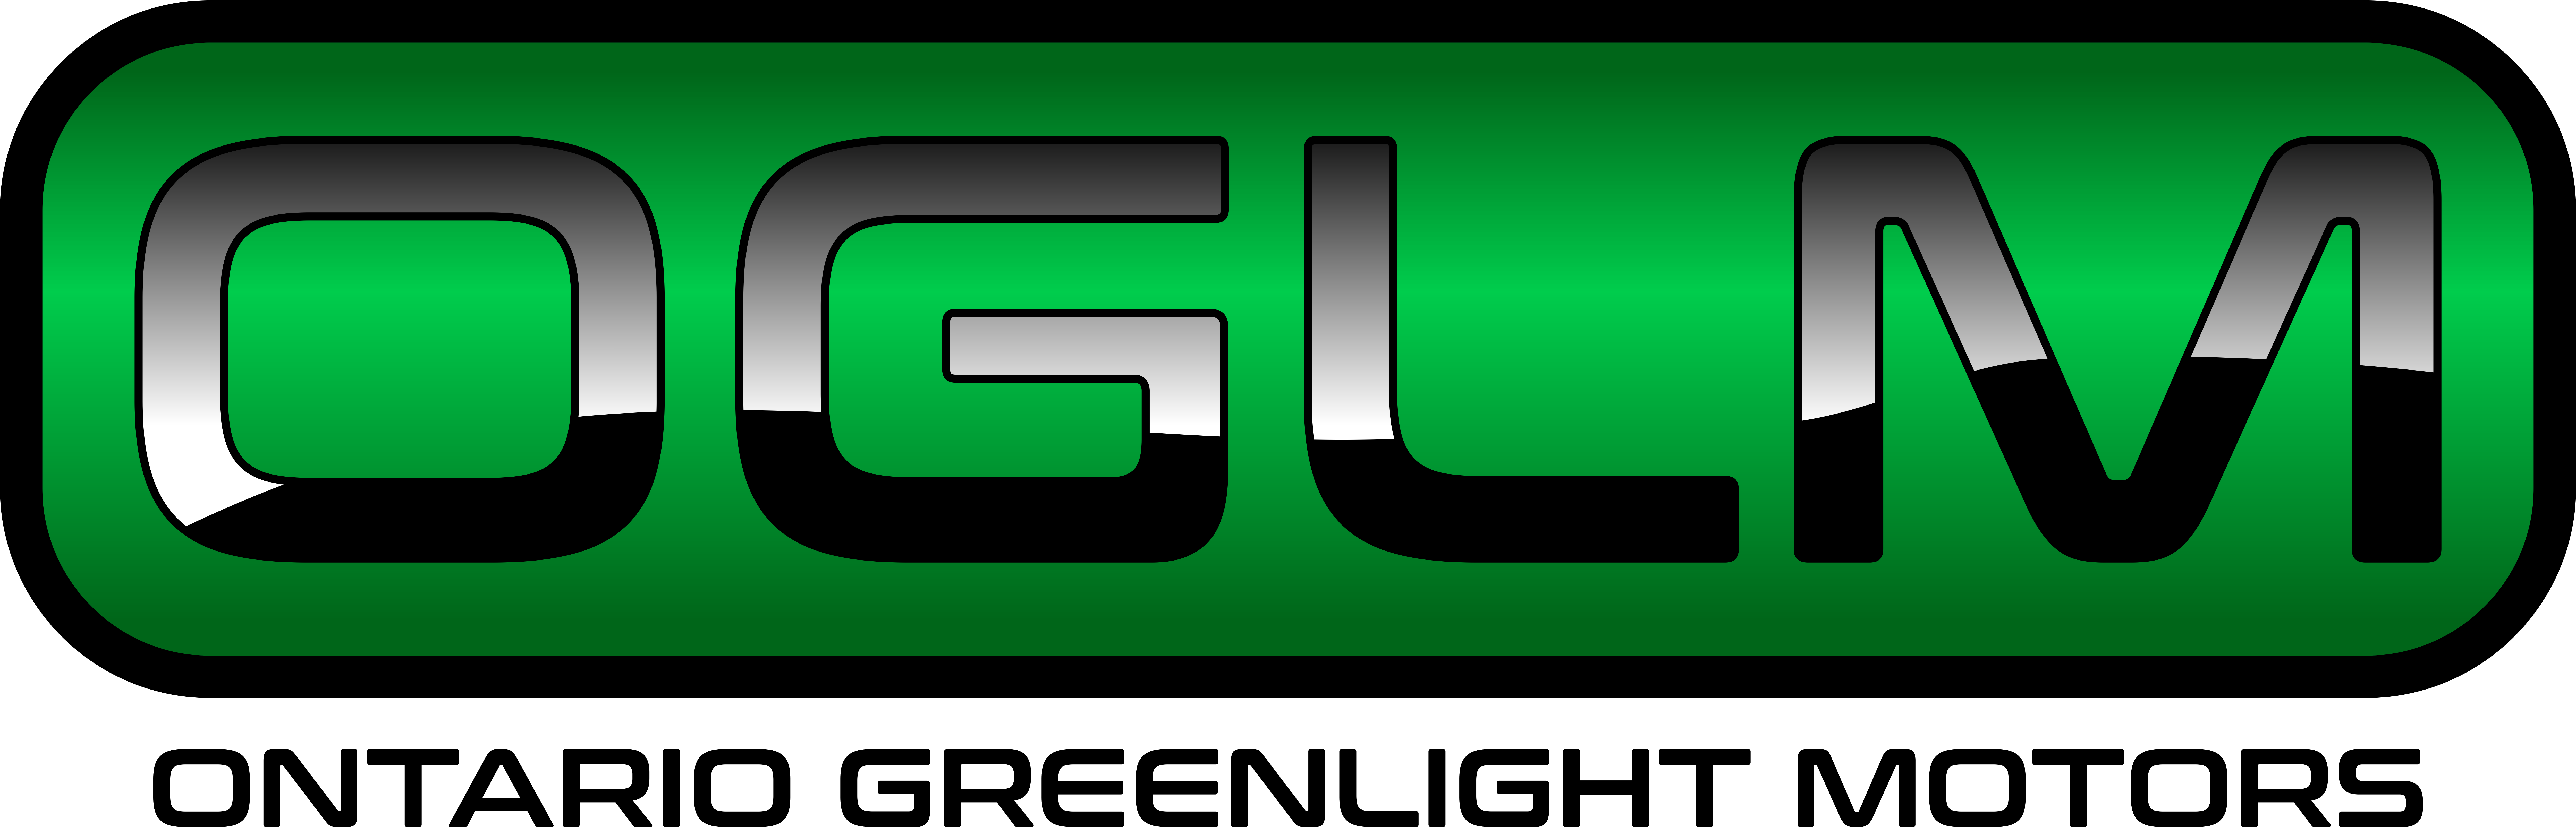 Ontario Greenlight Motors logo